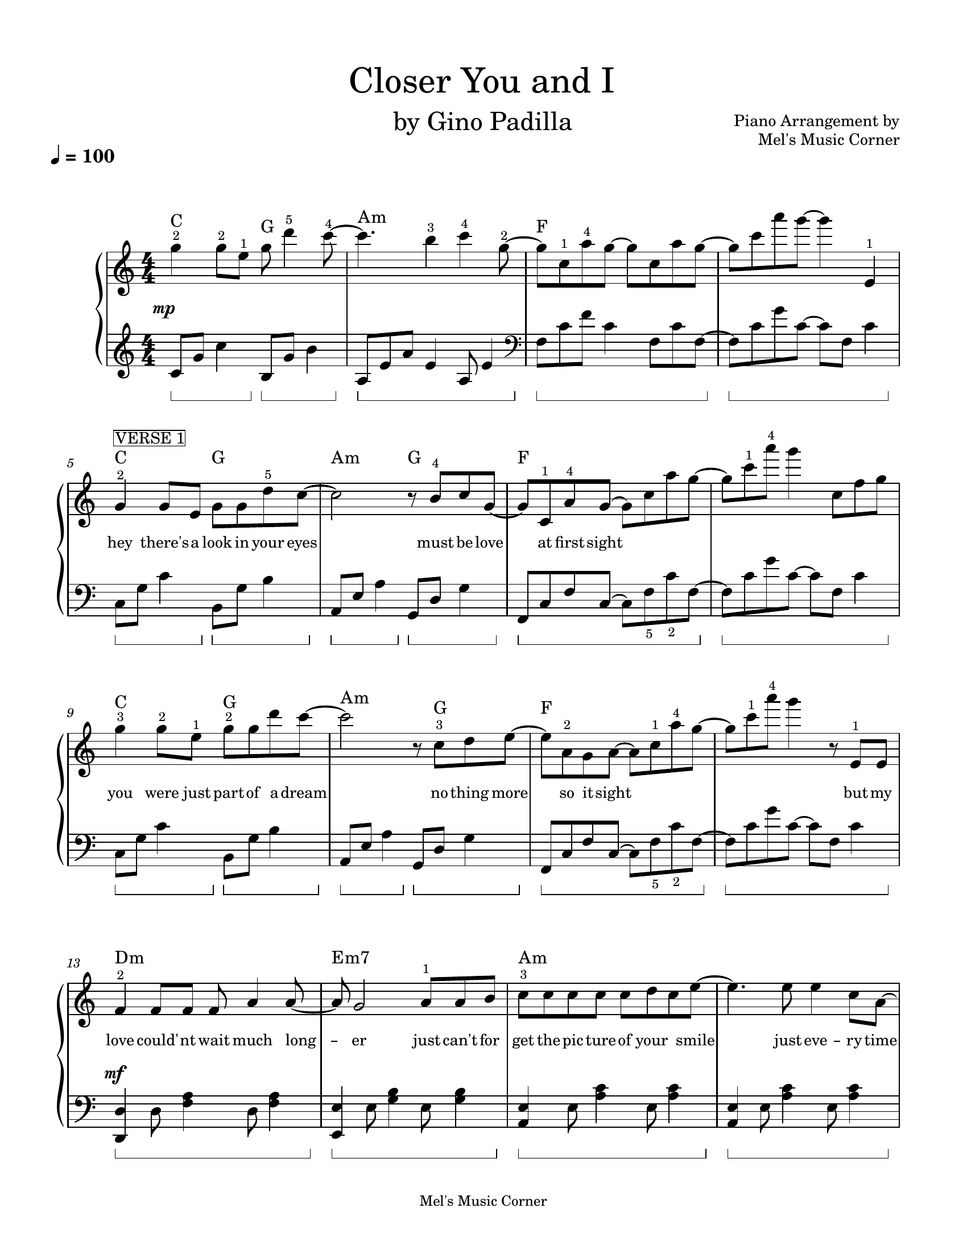 Gino Padilla - Closer You and I (piano sheet music) by Mel's Music Corner